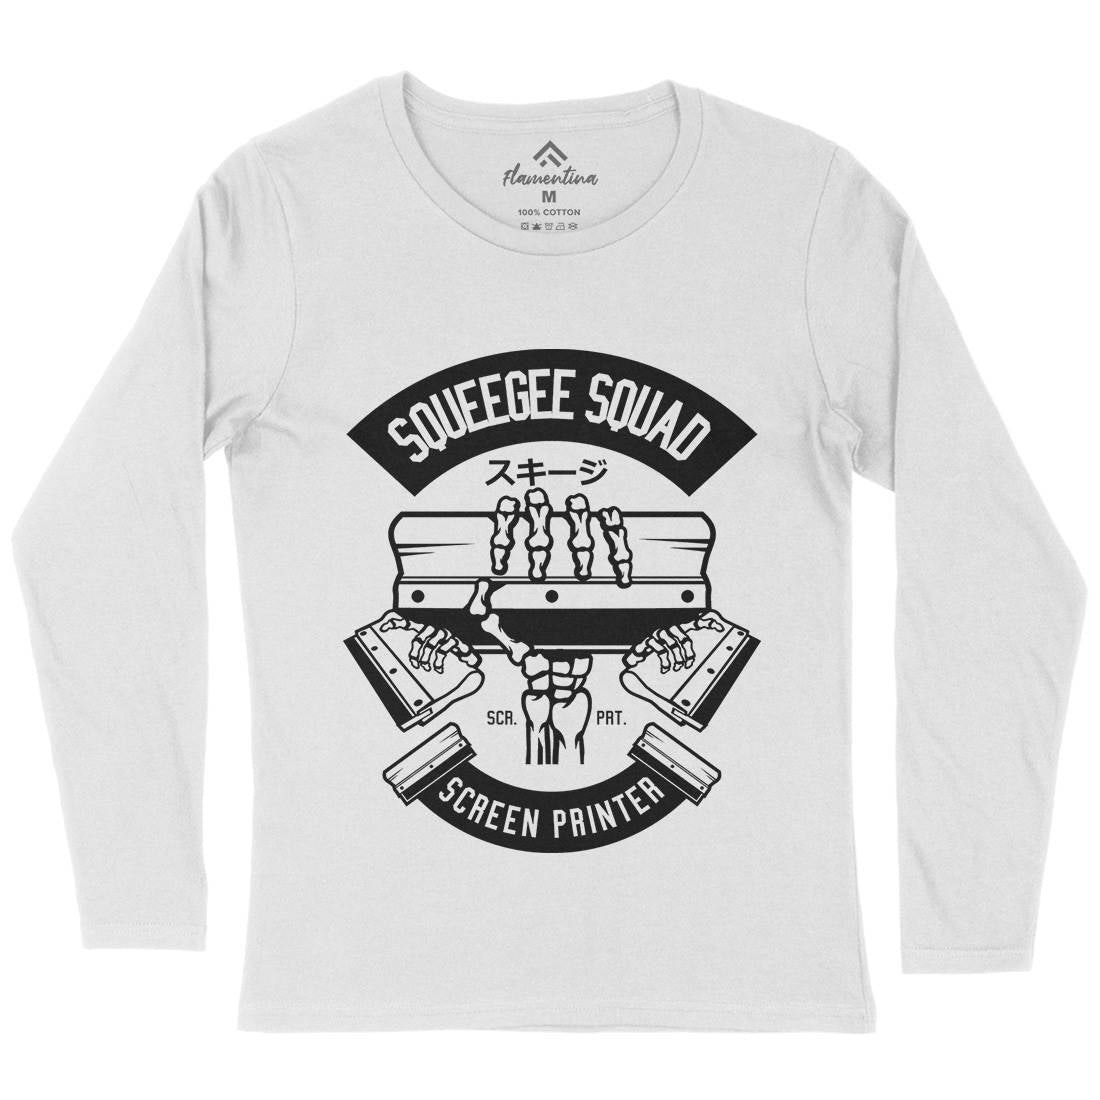 Squeegee Squad Womens Long Sleeve T-Shirt Retro B642